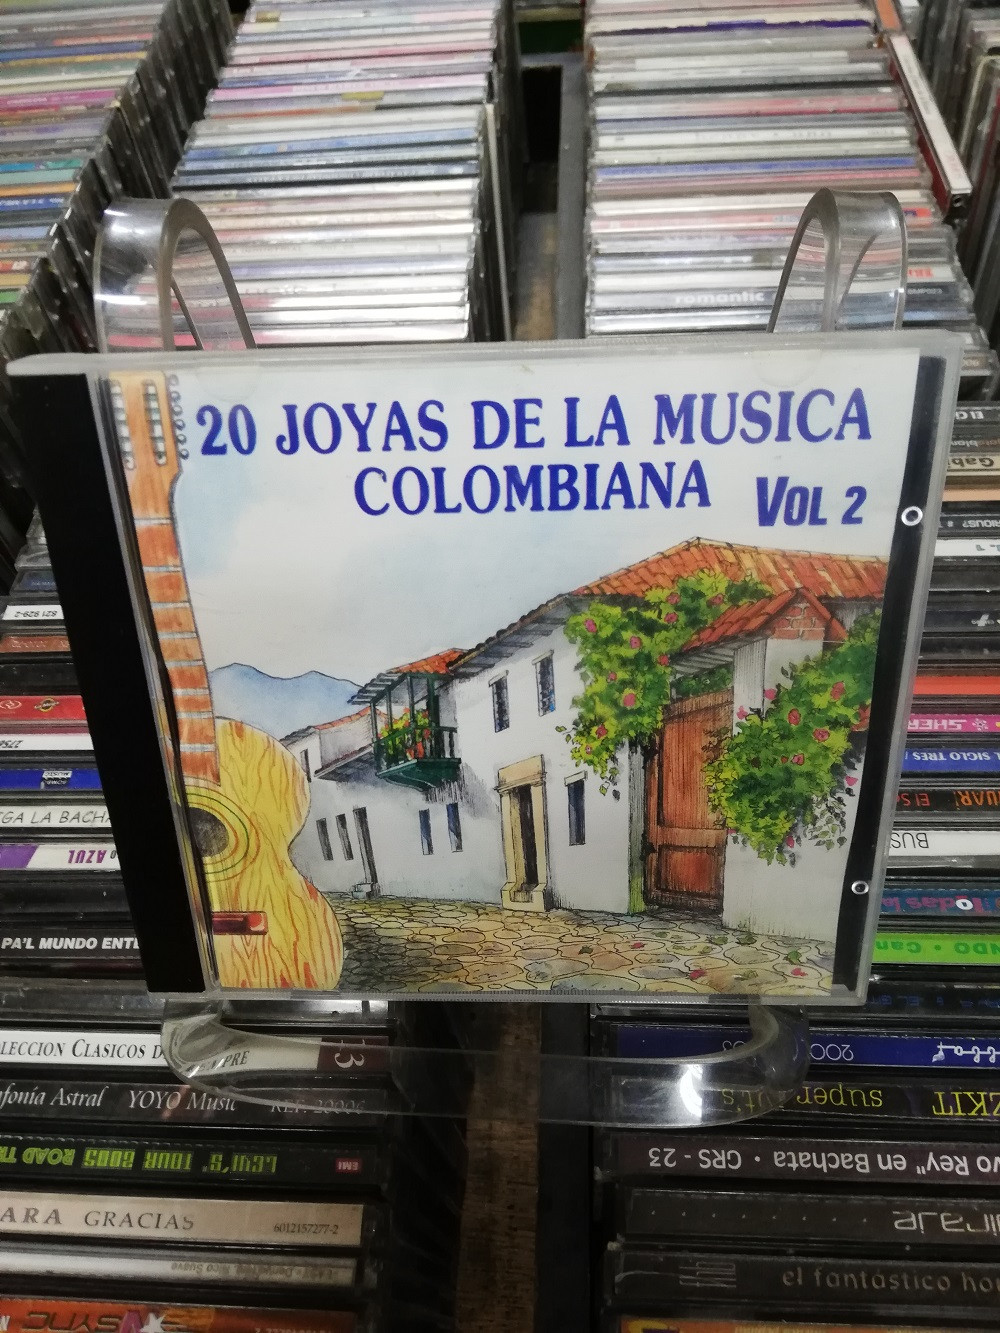 Imagen CD 20 JOYAS DE LA MÚSICA COLOMBIANA VOL. 2 1